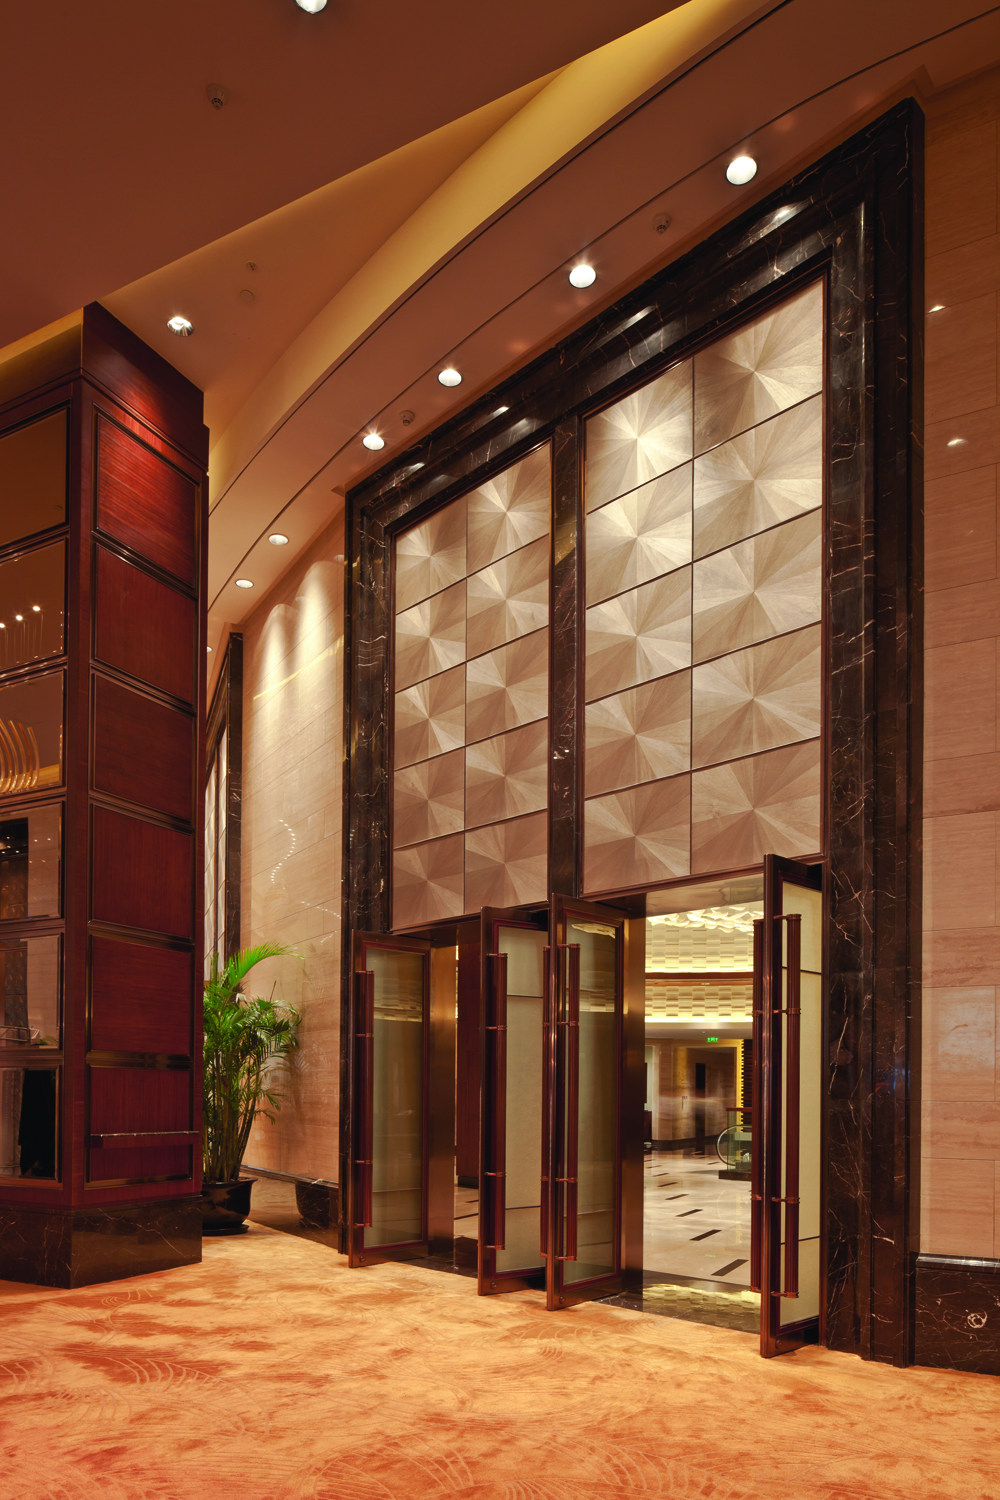 上海浦东嘉里大酒店( Kerry Hotel Pudong Shanghai)第12页更新__上海嘉里_0358.jpg